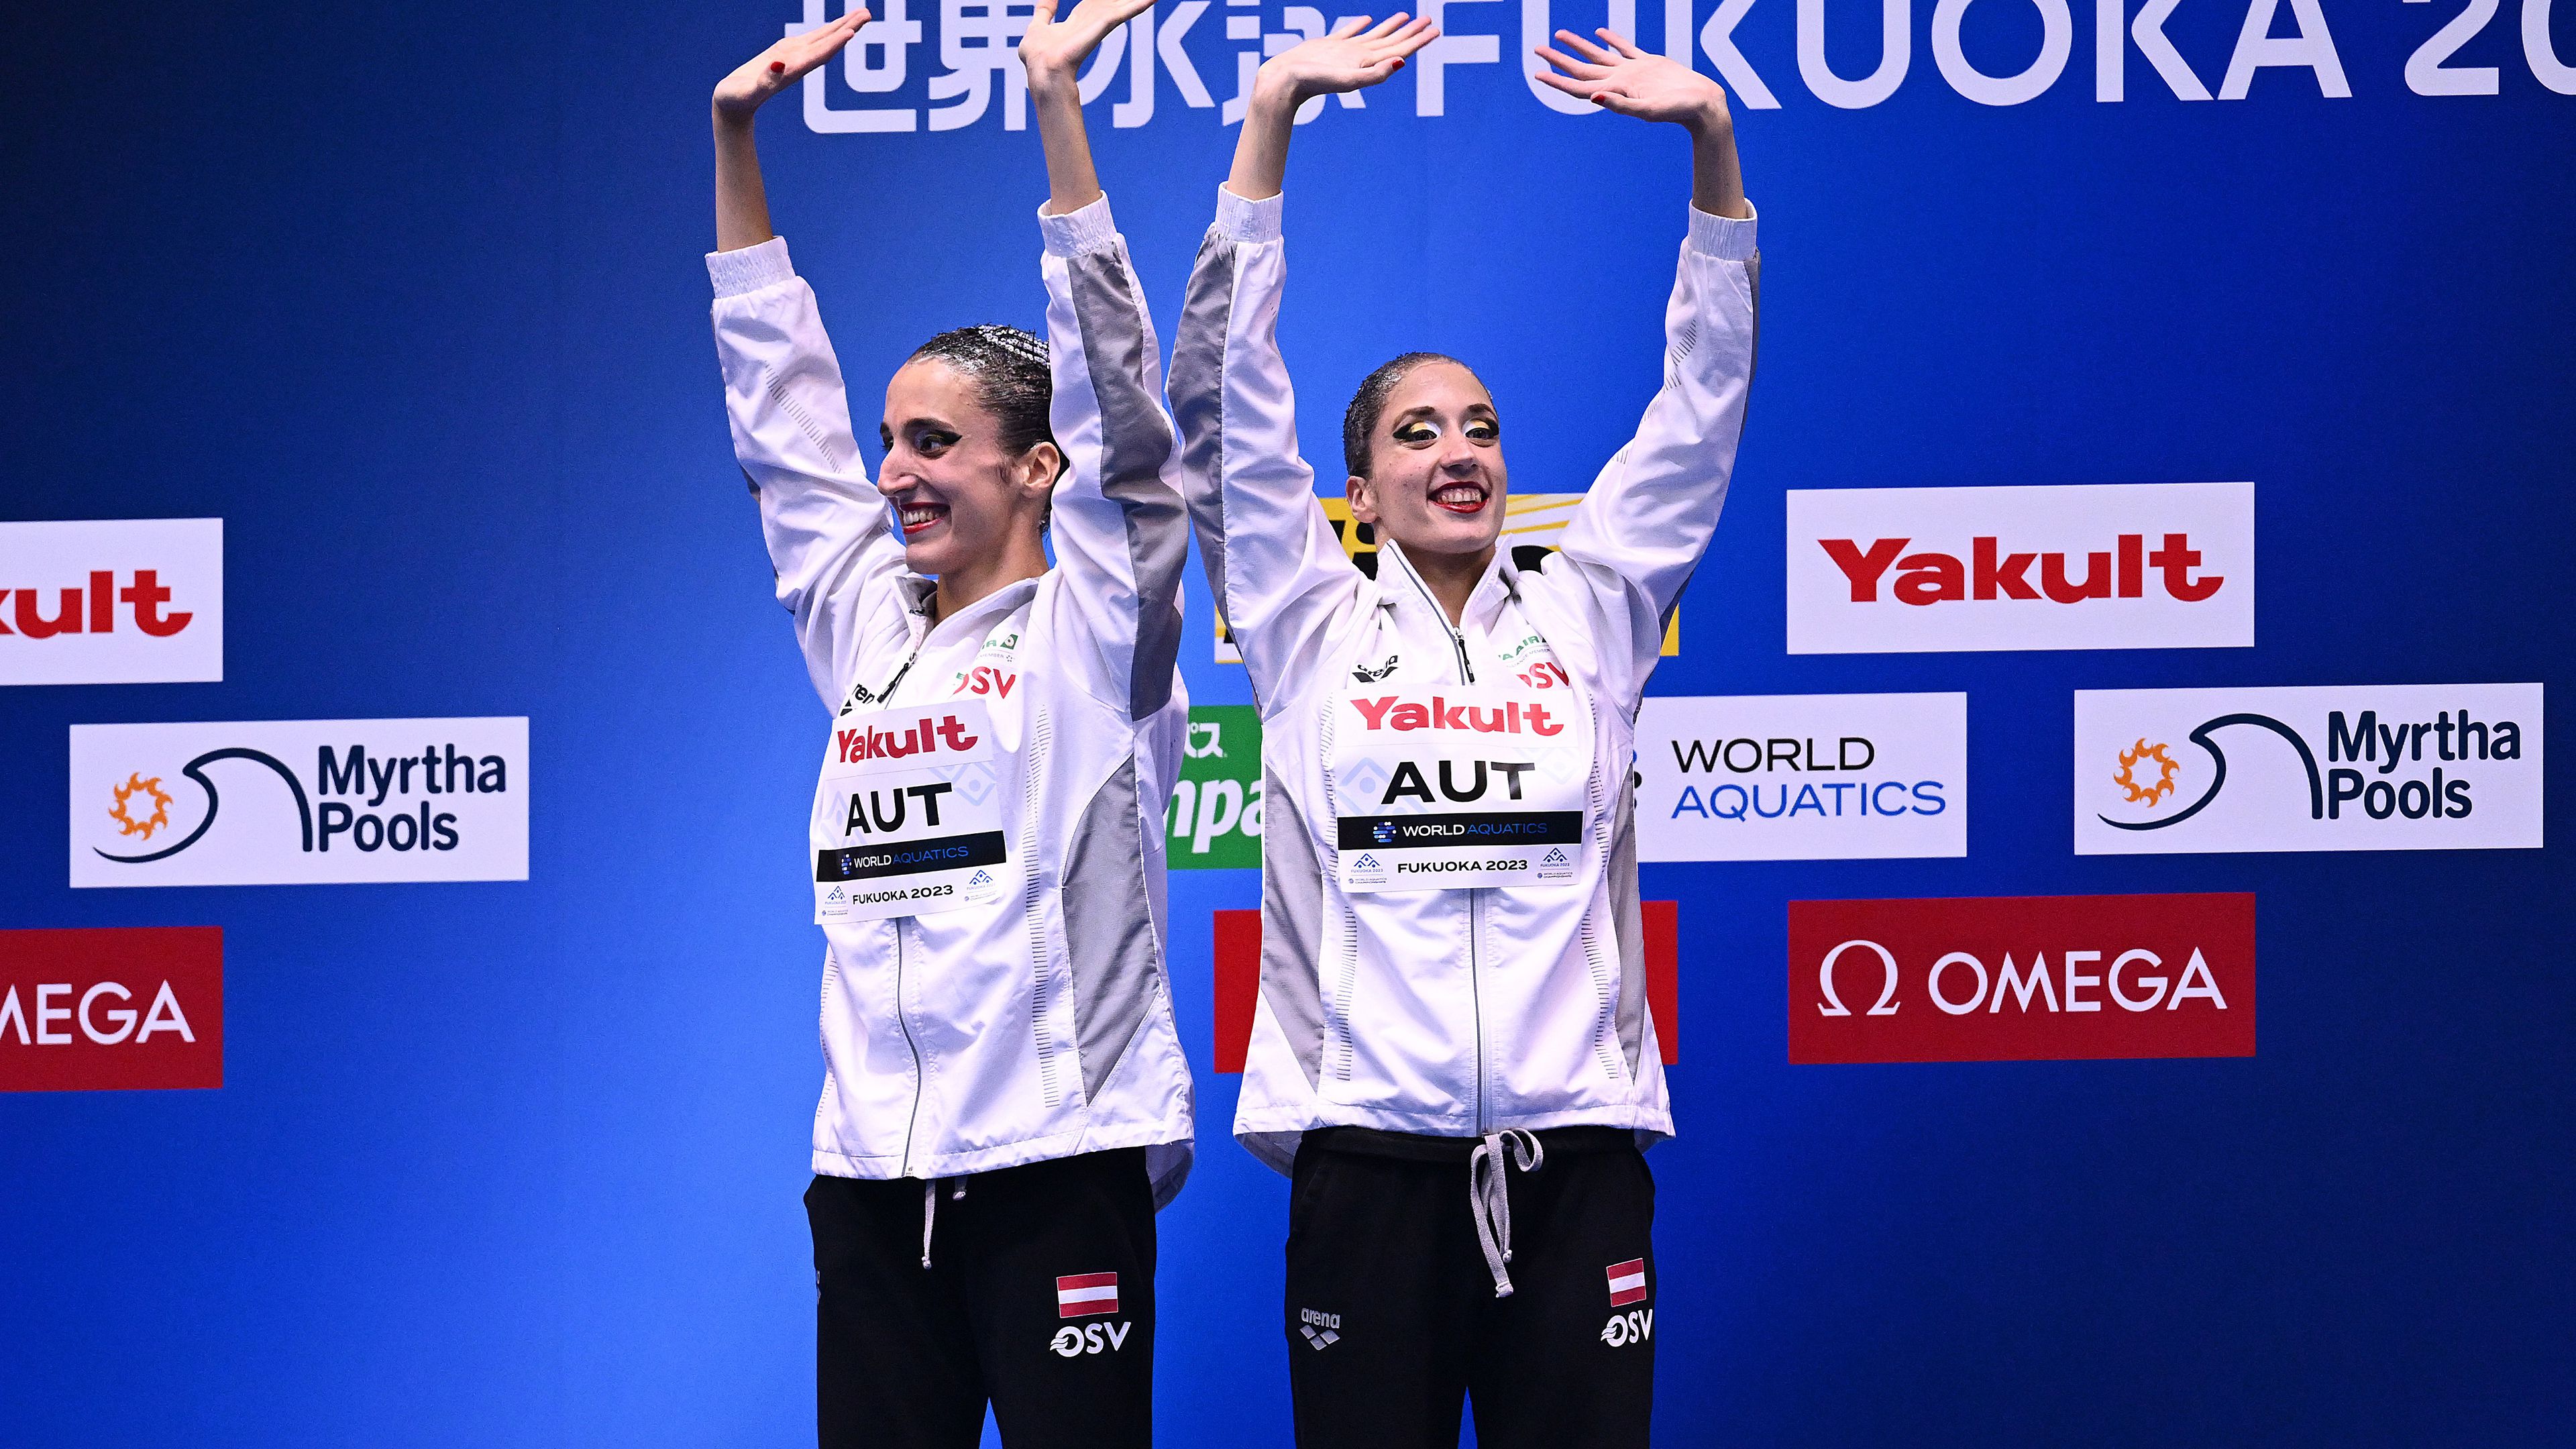 Az Anna-Maria Alexandri, Eirini Alexandri osztrák kettős nyerte a szinkronúszó párosok versenyét a vizes vb-n